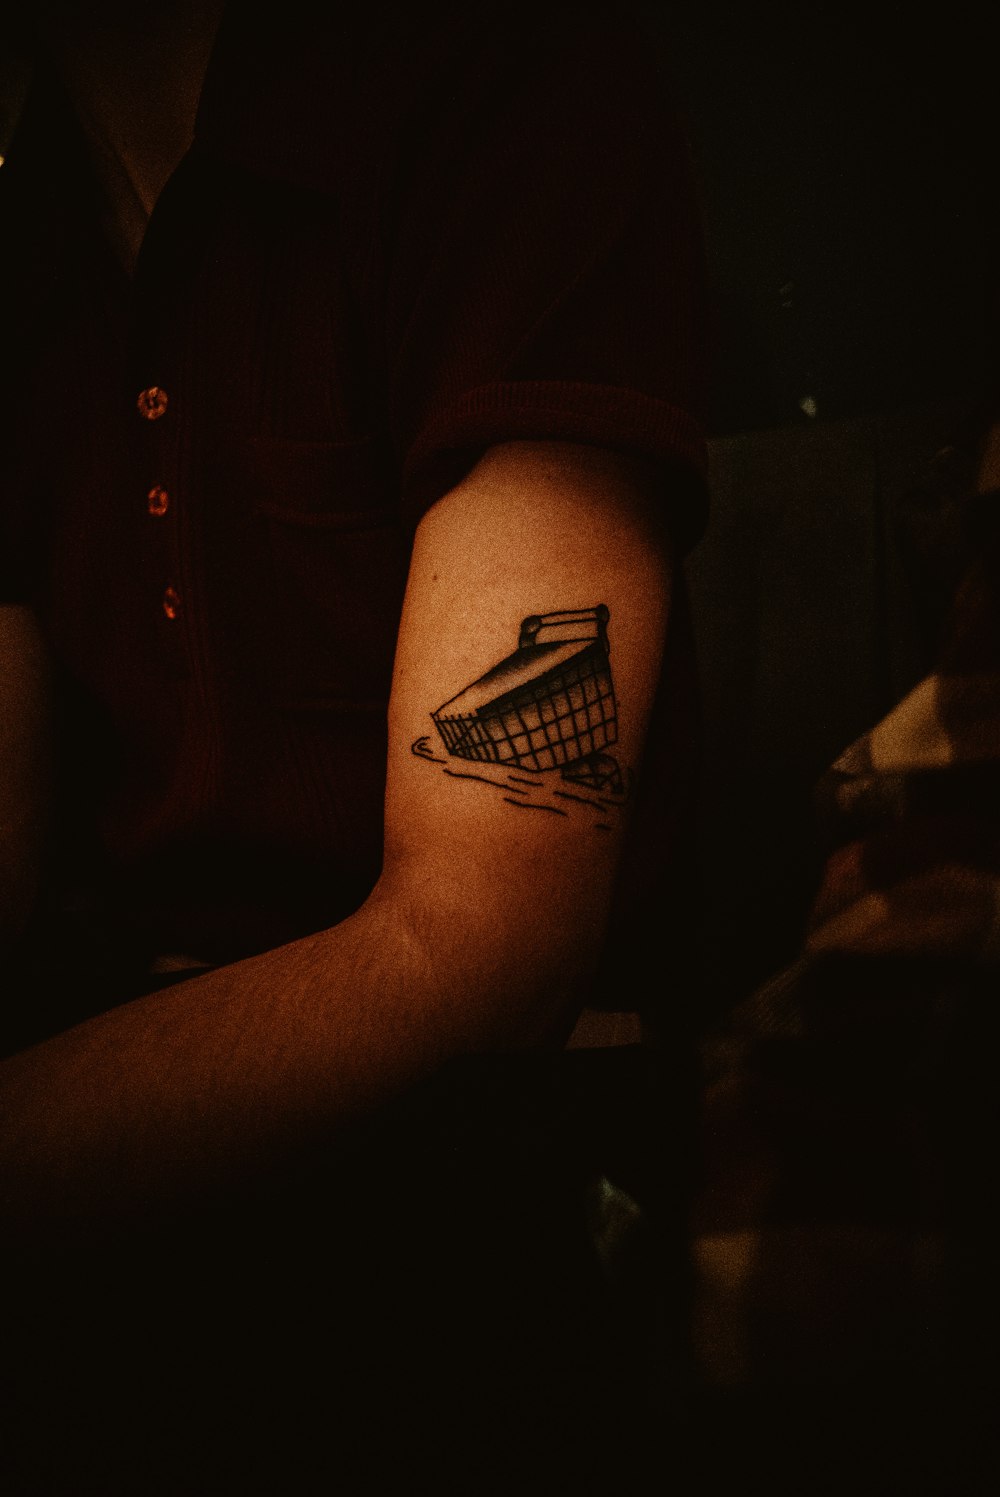 Der Arm einer Person mit einem Tattoo darauf